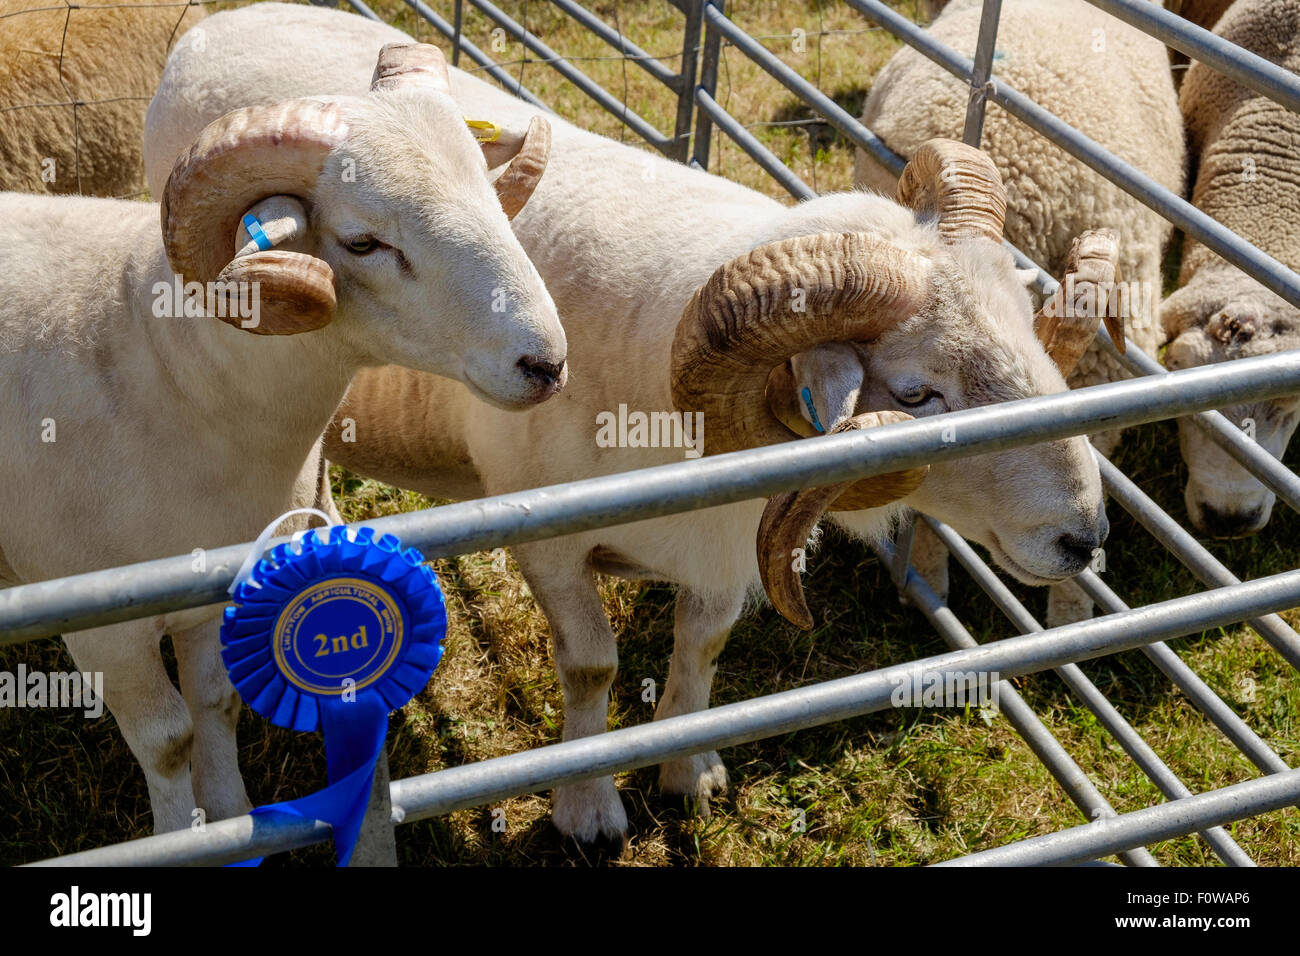 Dos ovejas con cuernos rizado grueso en la pluma en la Feria de agricultura de Chepstow en Gales en agosto de 2015. 2º premio Rosette en barra de lápiz. Foto de stock